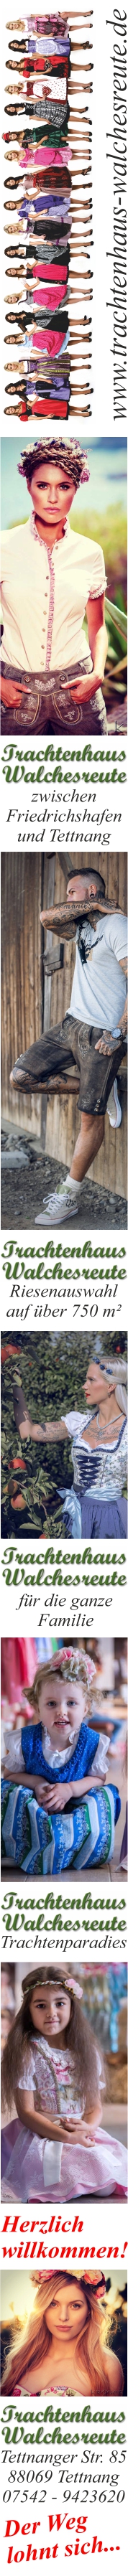 Trachtenhaus-Walchesreute